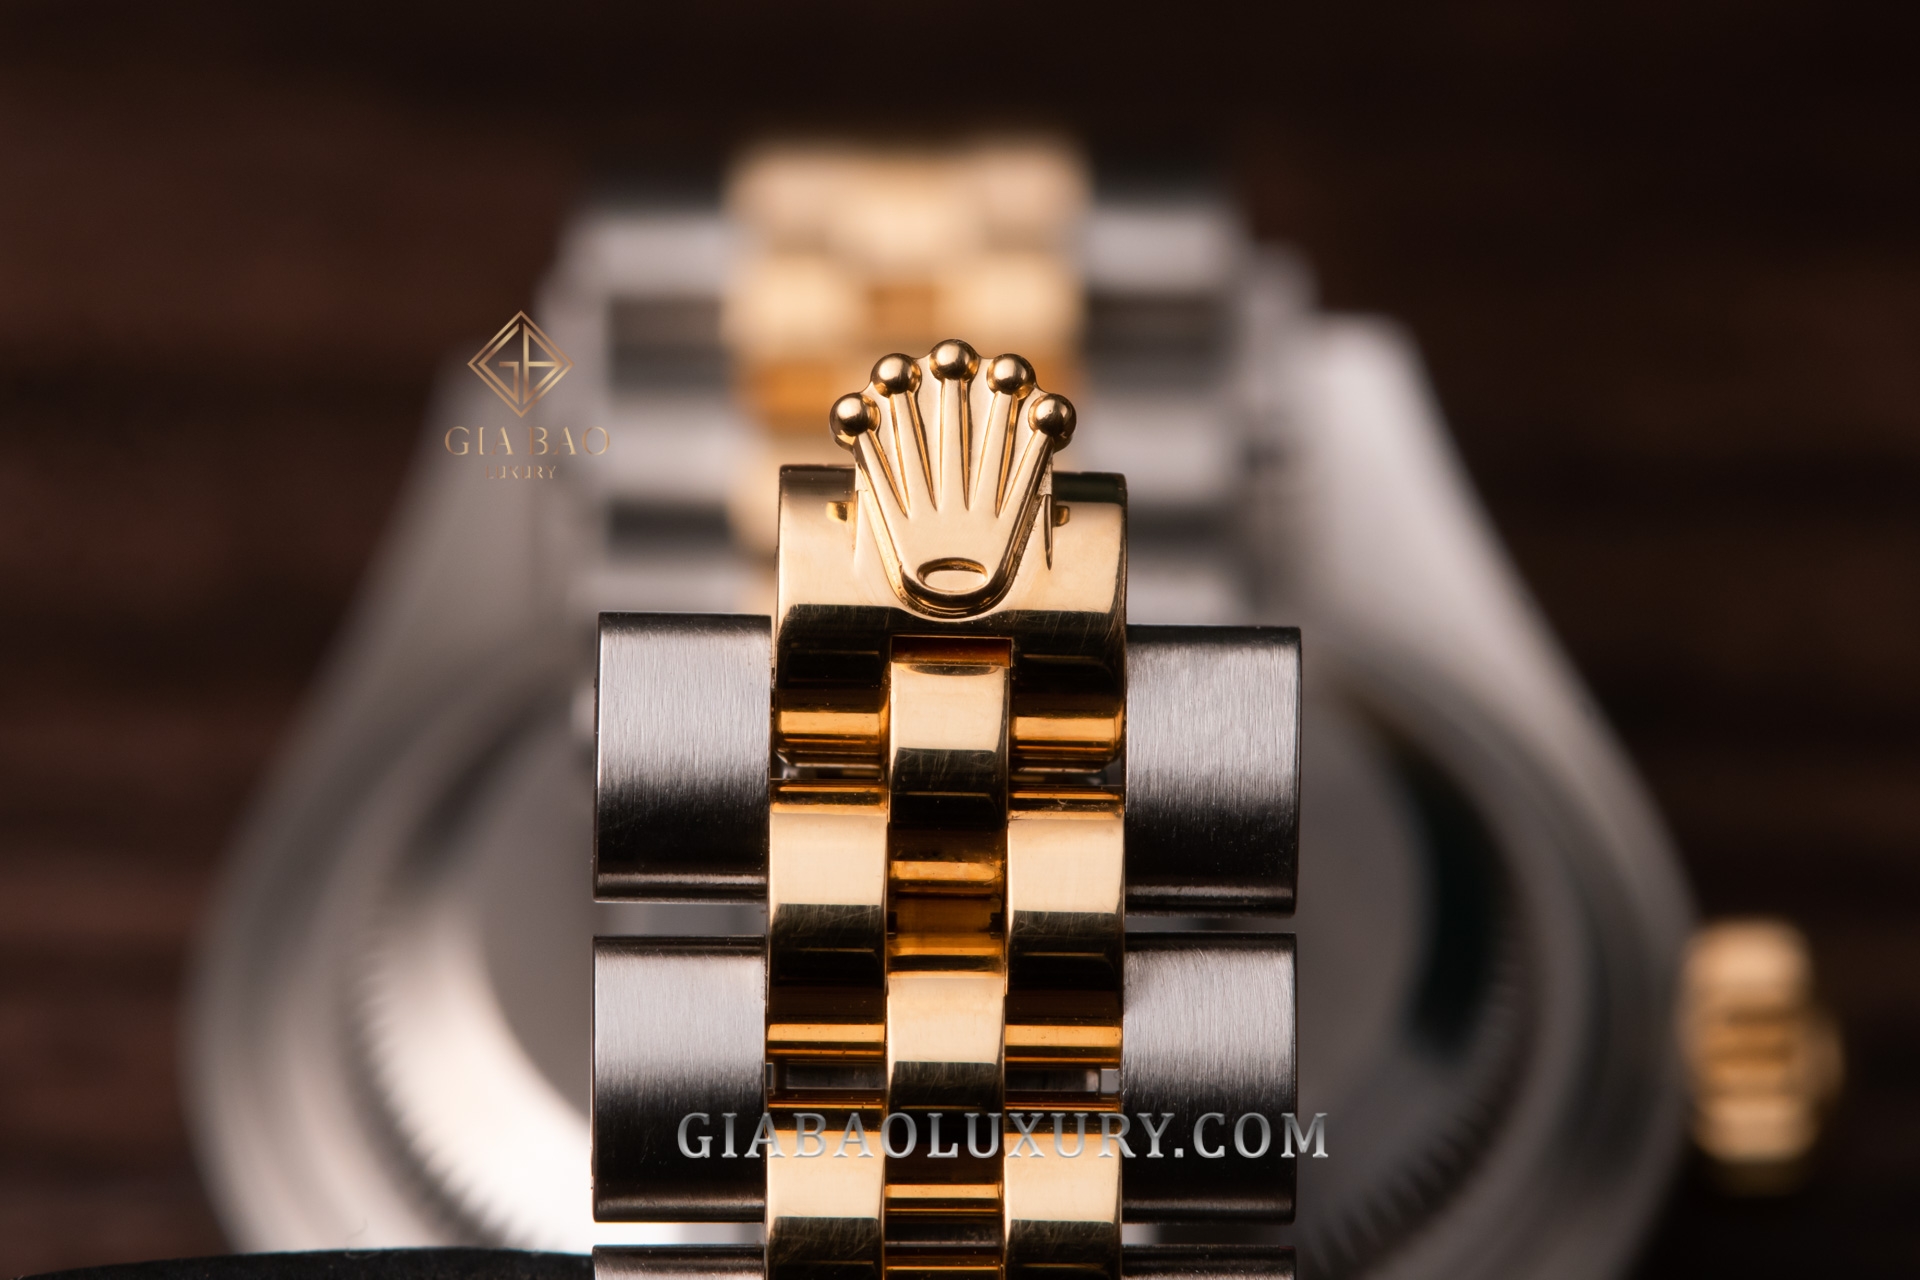 Đồng Hồ Rolex Lady-Datejust 28 279173 Mặt Số Vàng Champagne Nạm Kim Cương